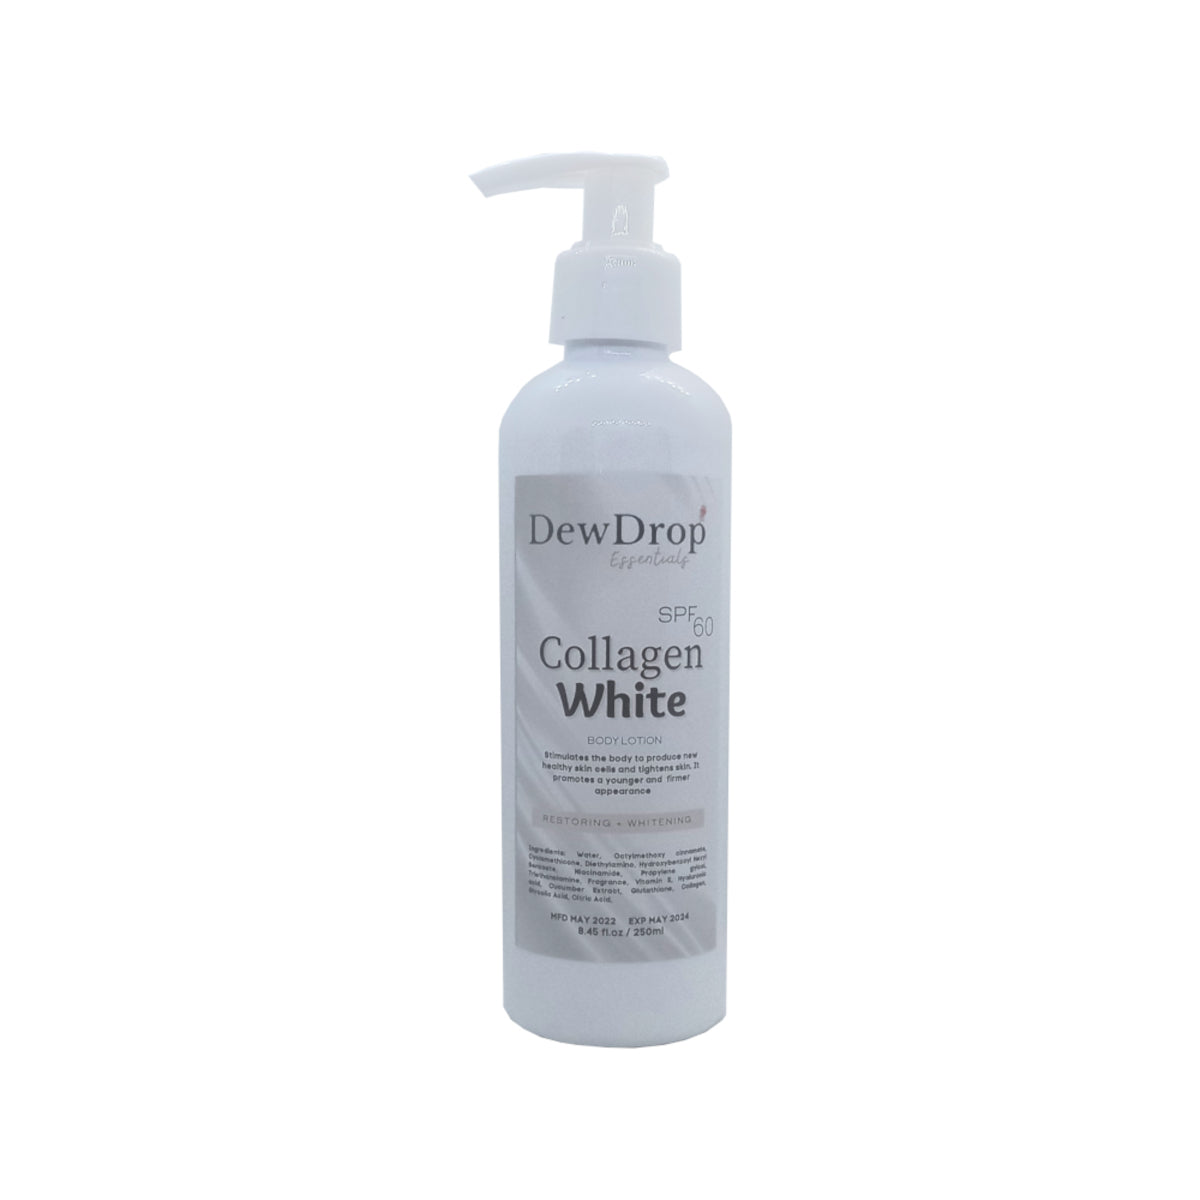 Dewdrop Gluta Berry & Collagen Whitening Body Lotion | Dewmart